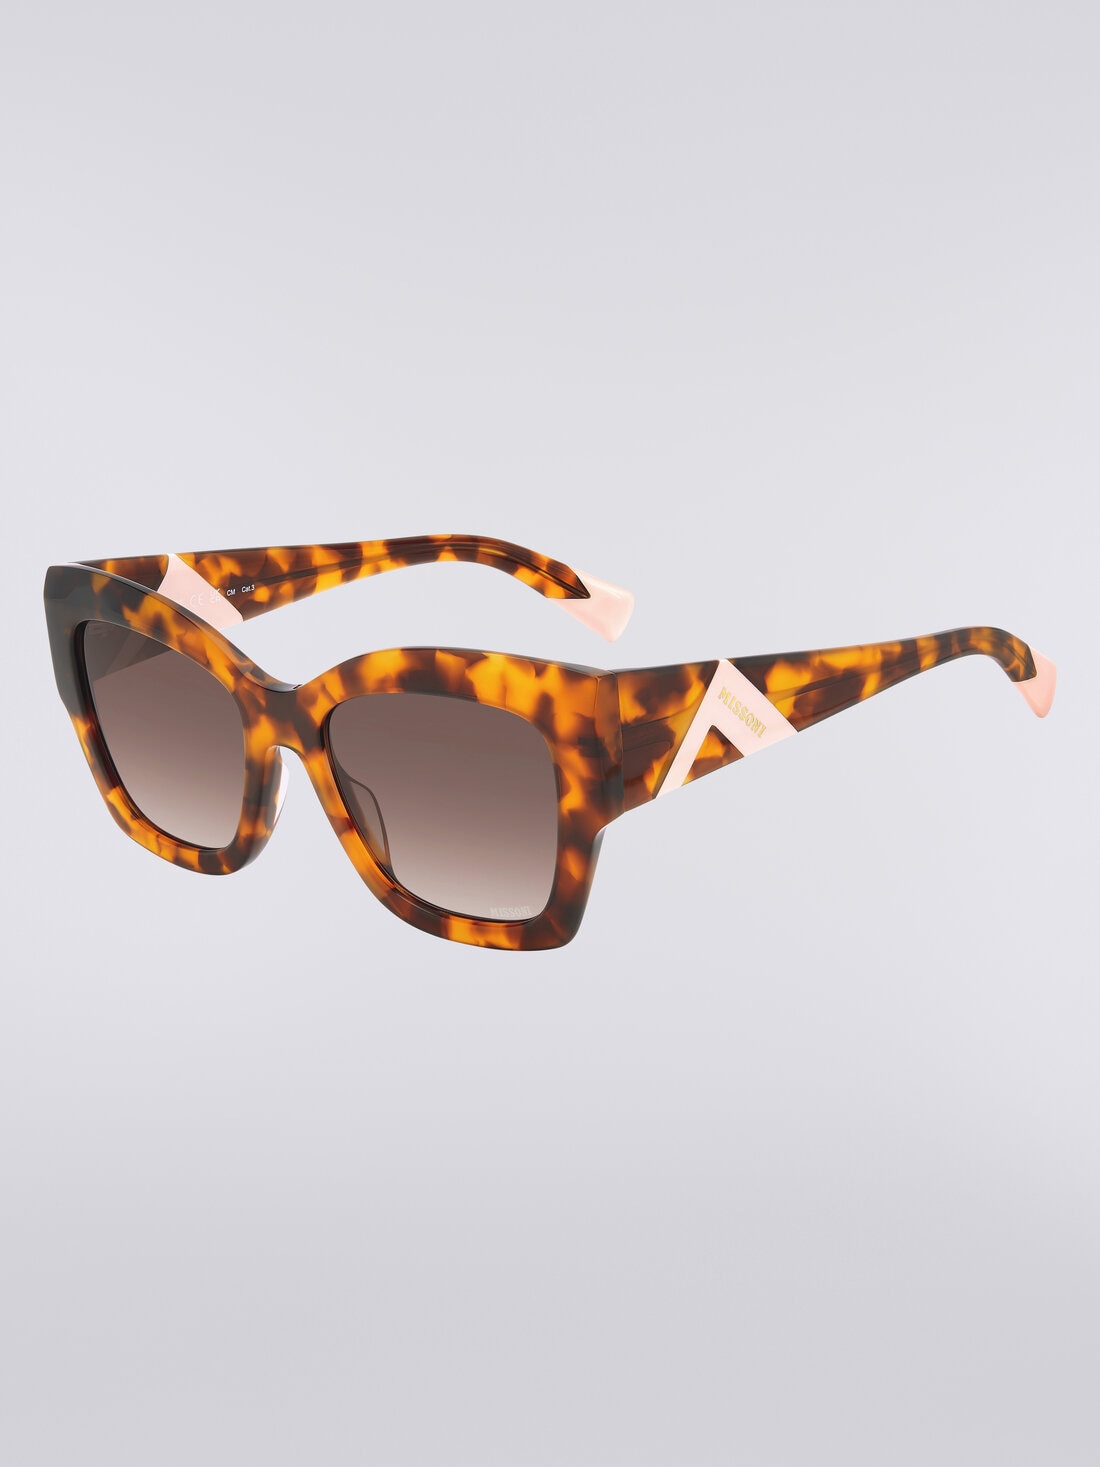 Gafas de sol extragrandes de mariposa, Multicolor  - 8053147115443 - 1